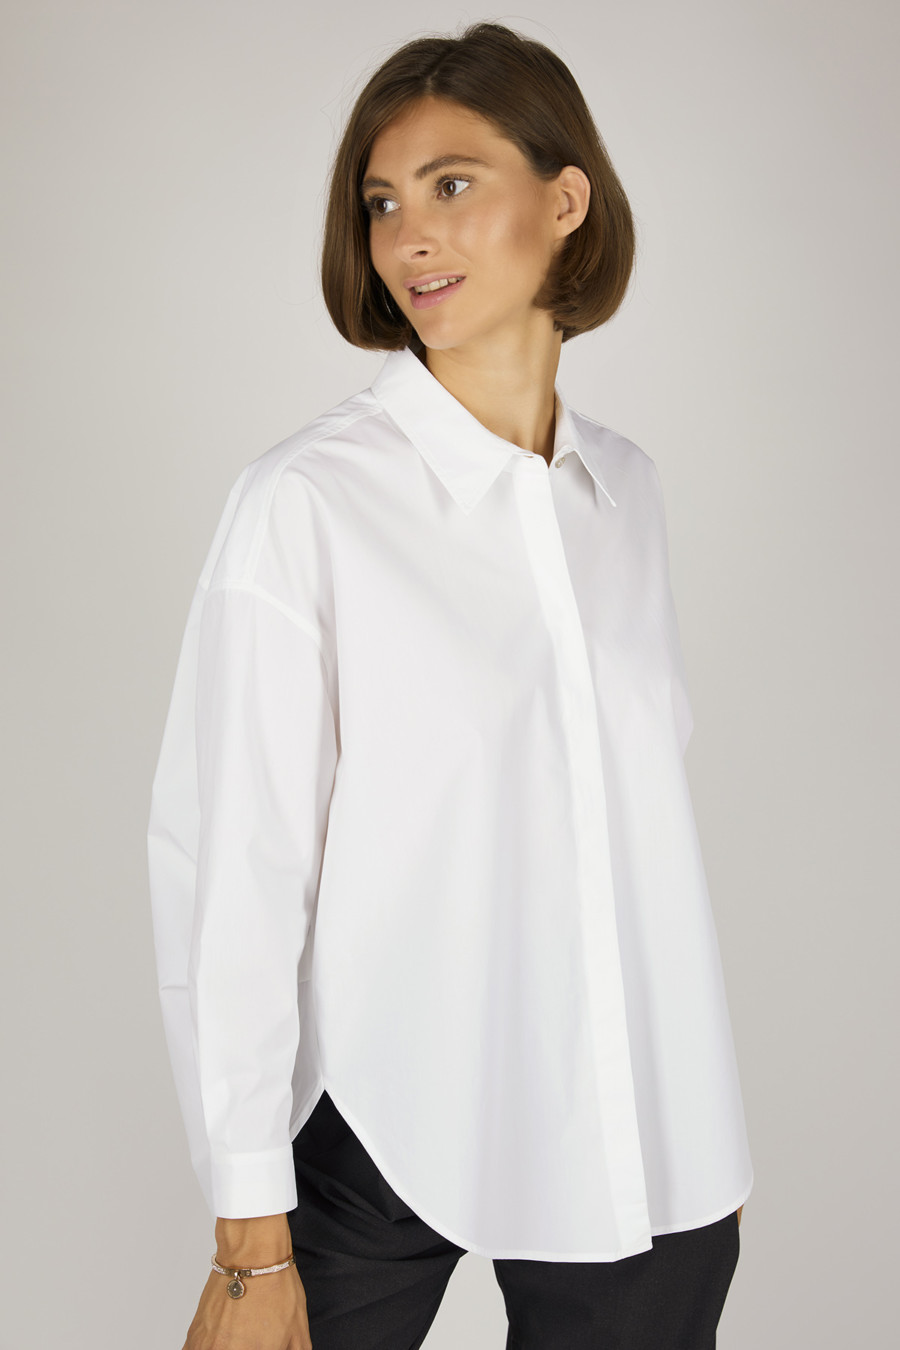 BRITT – Side ruffled shirt blouse – Color: White